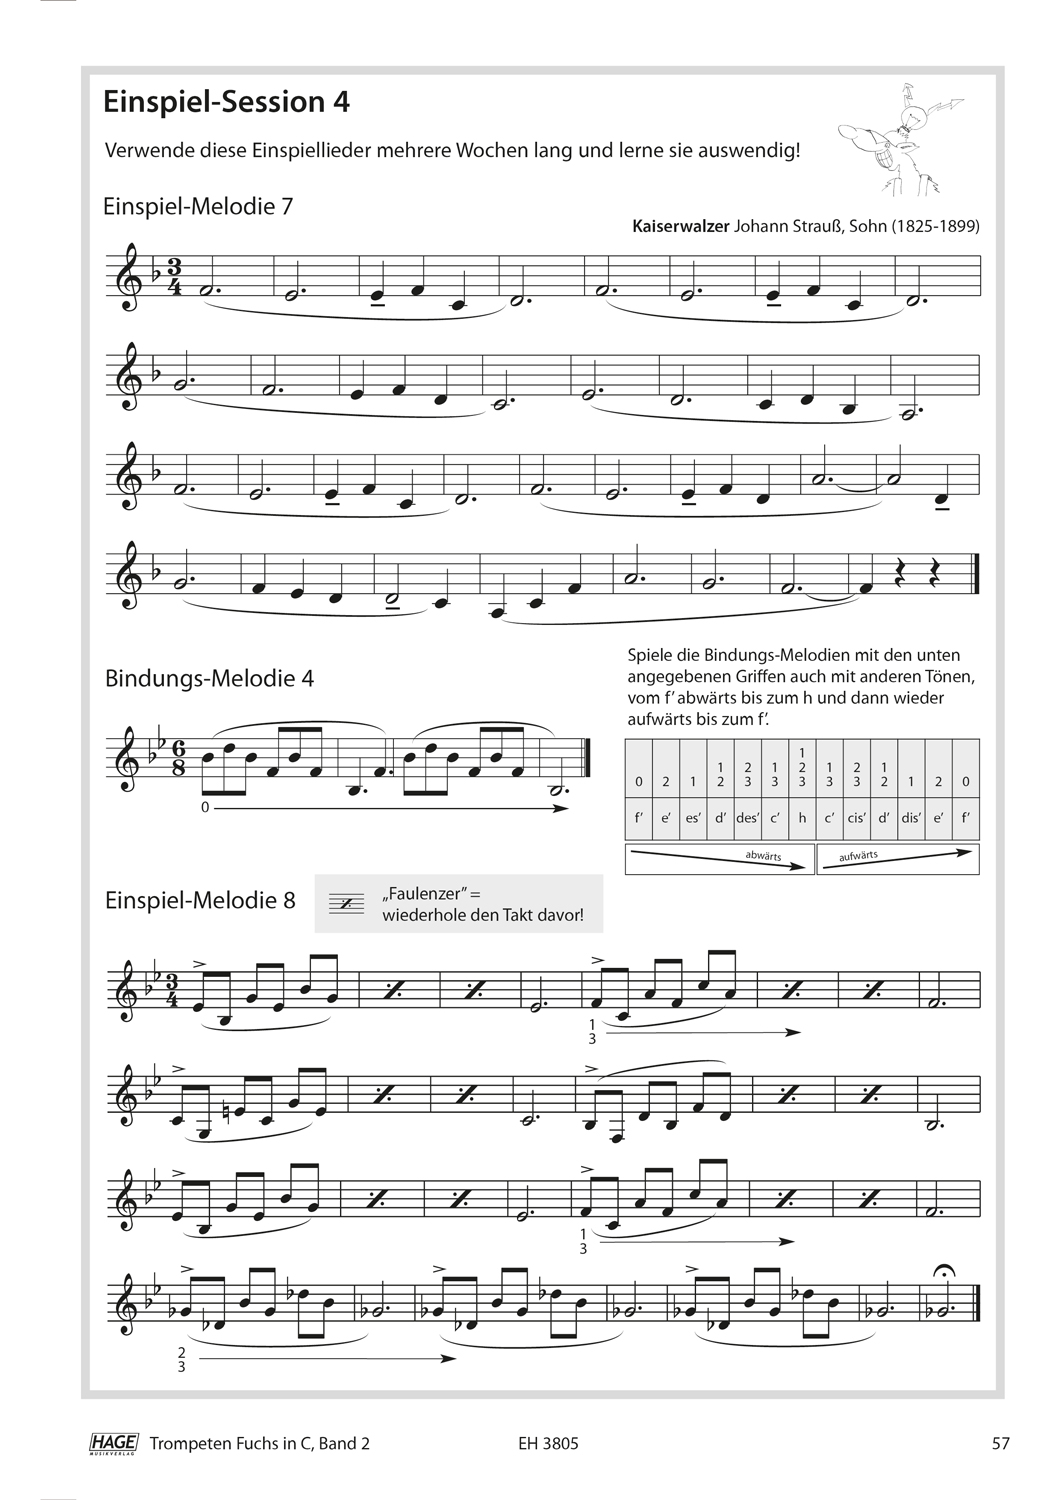 Trompeten Fuchs Band 2 in C für Posaunenchor (mit CD) Seiten 7